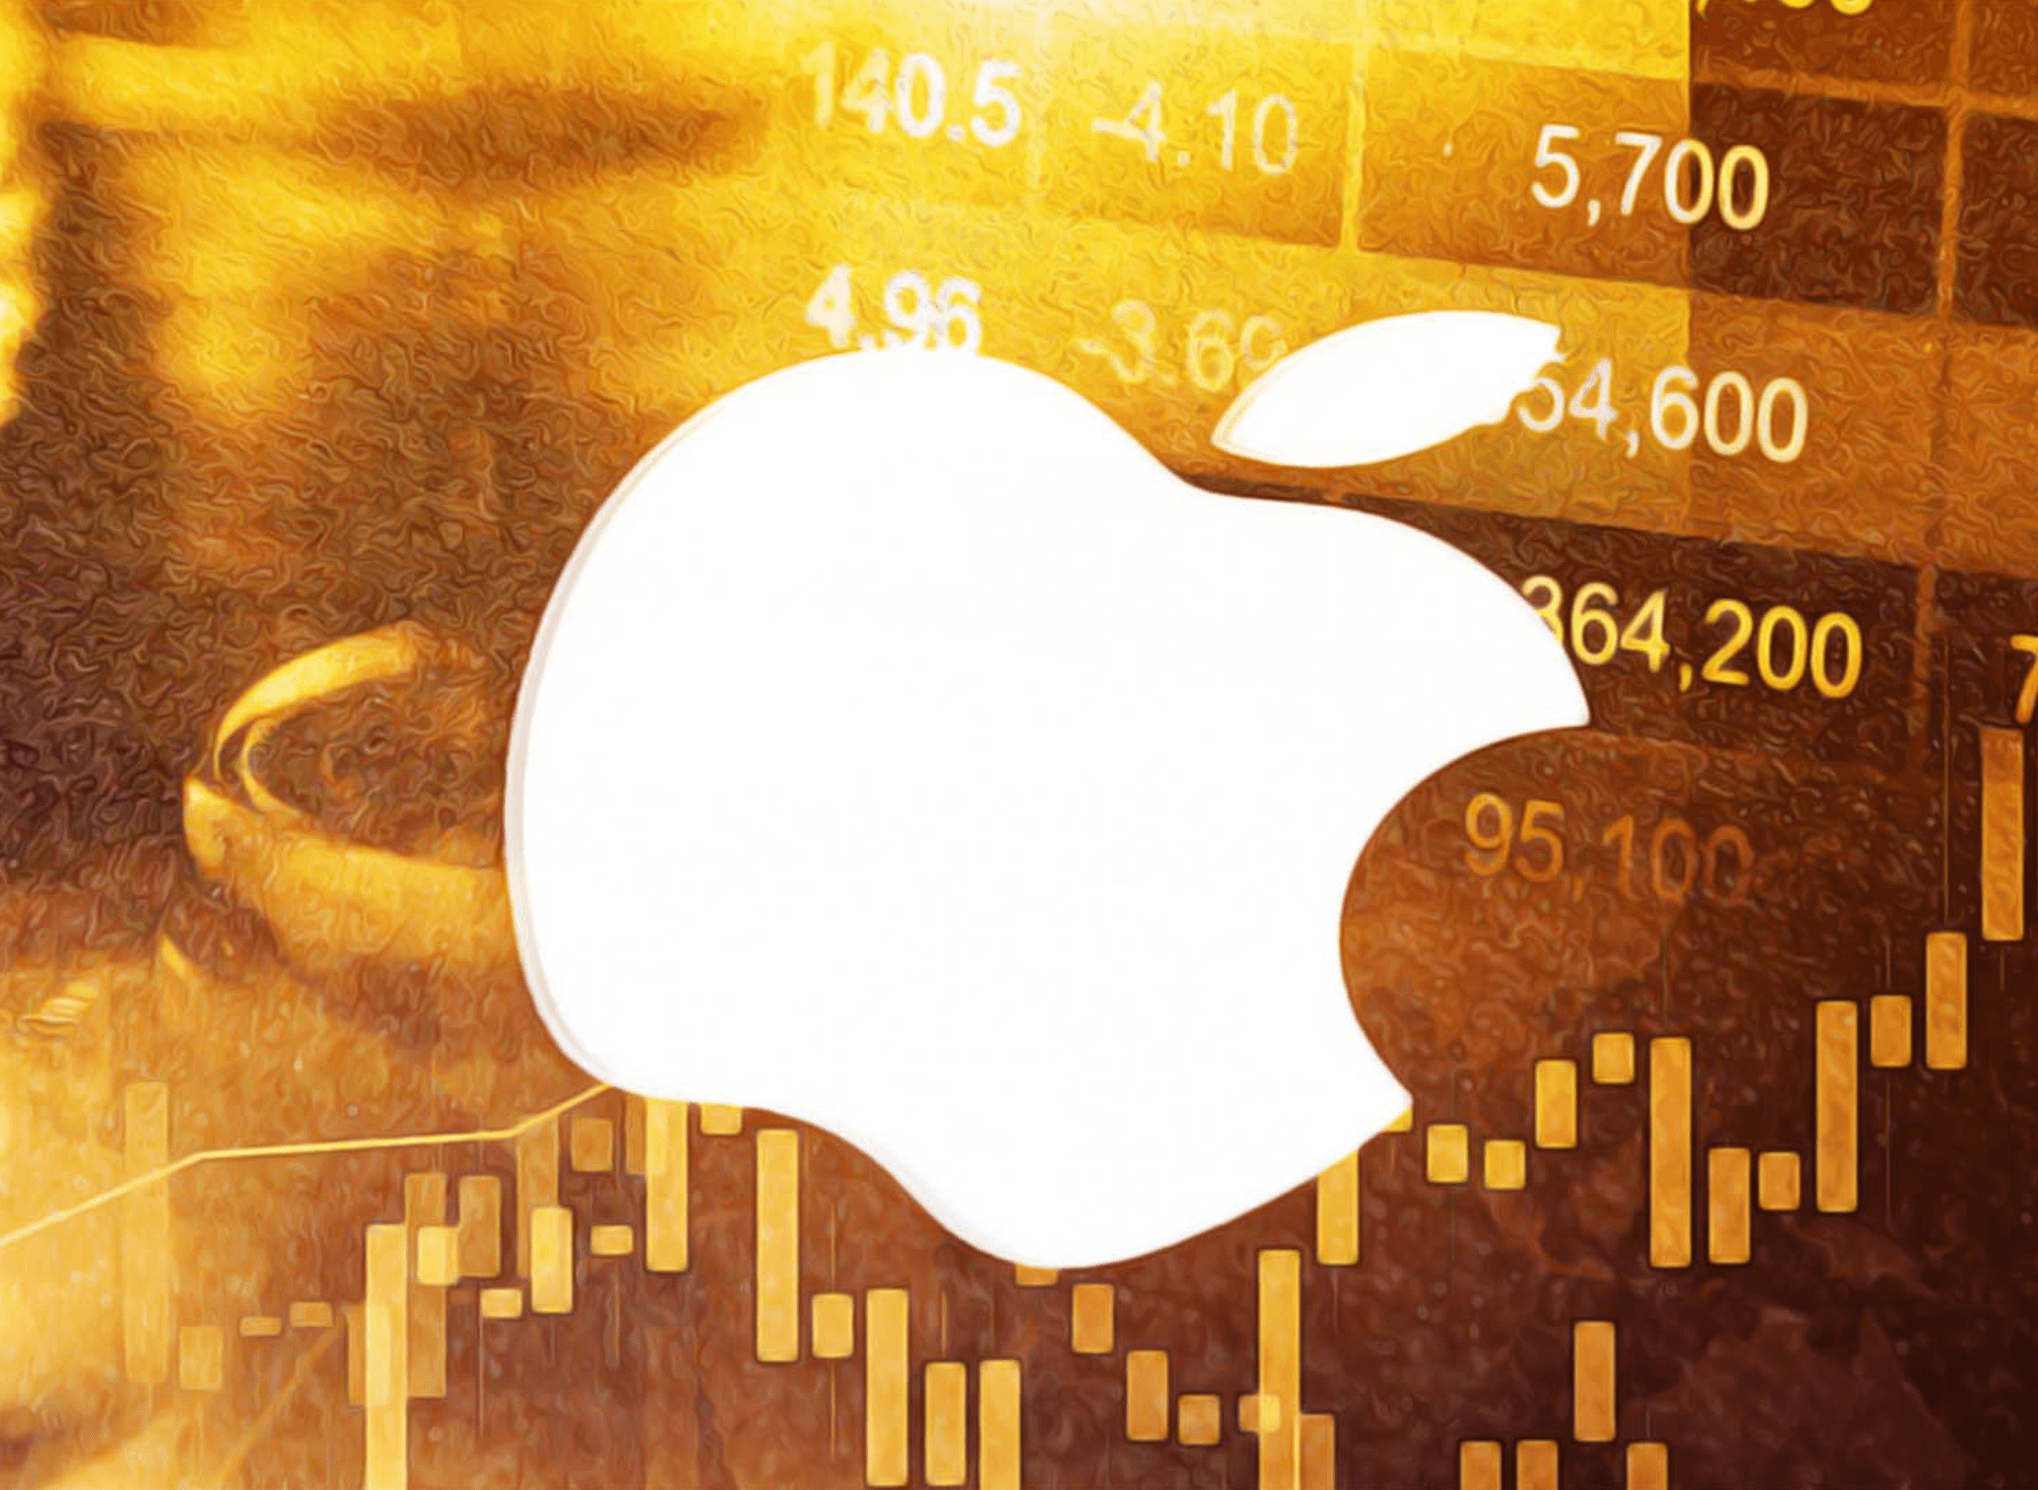 Cổ phiếu Apple tăng 60 lần lợi nhuận trong 20 năm qua. Làm sao để đầu tư?